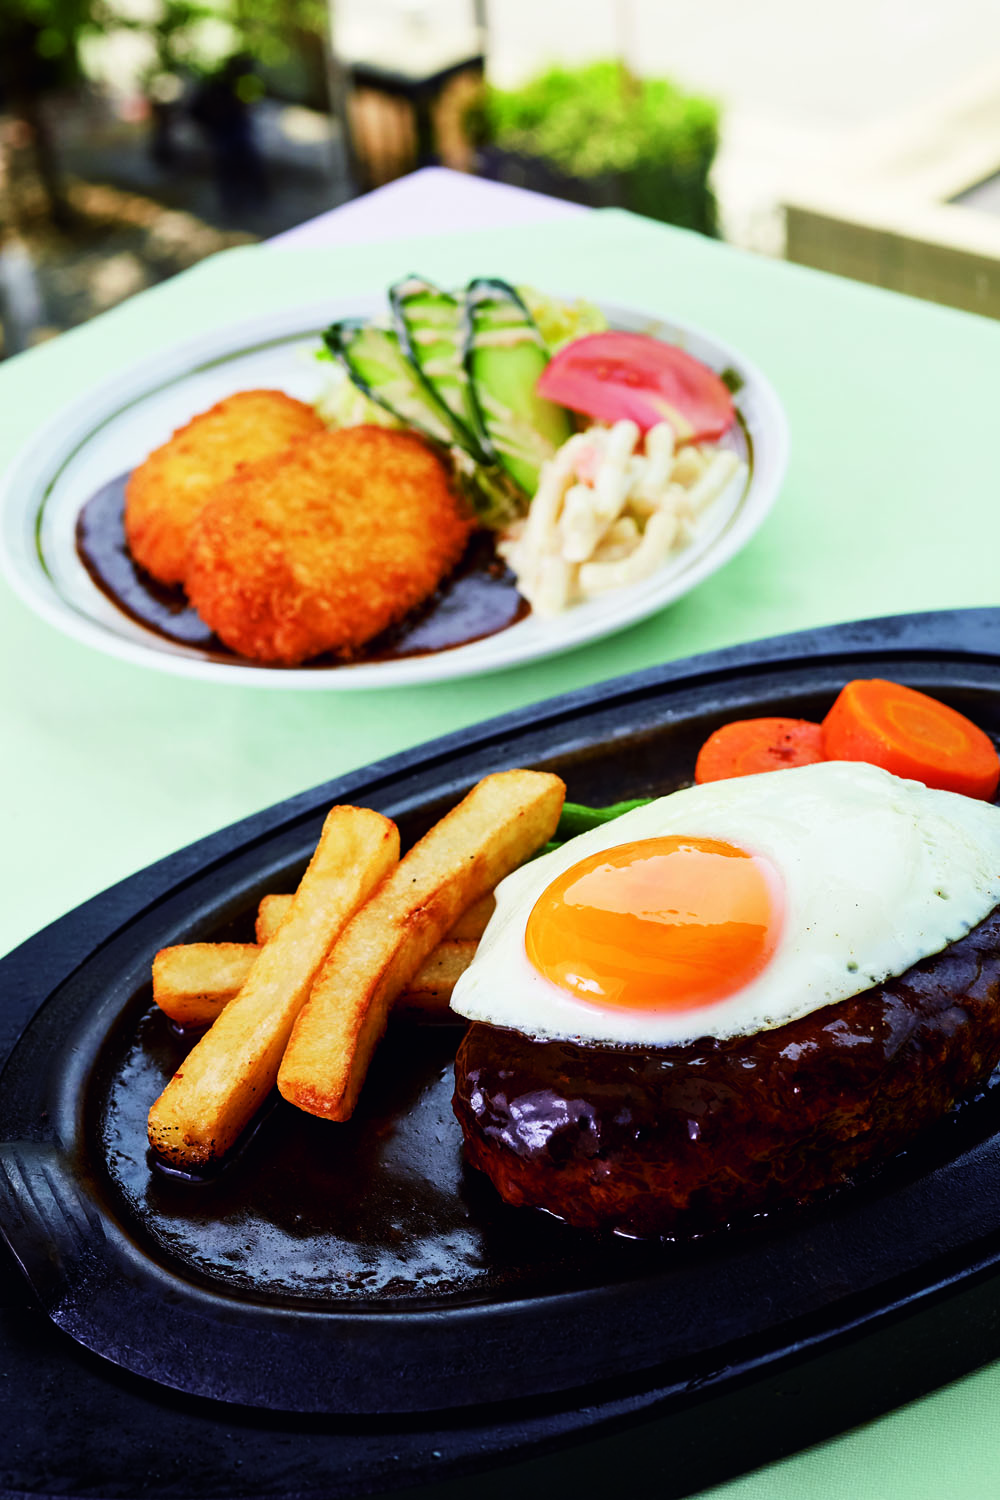 ハンバーグステーキ1100円は店で肉を挽いている。カニクリームコロッケ1100円はデミグラスソースで。